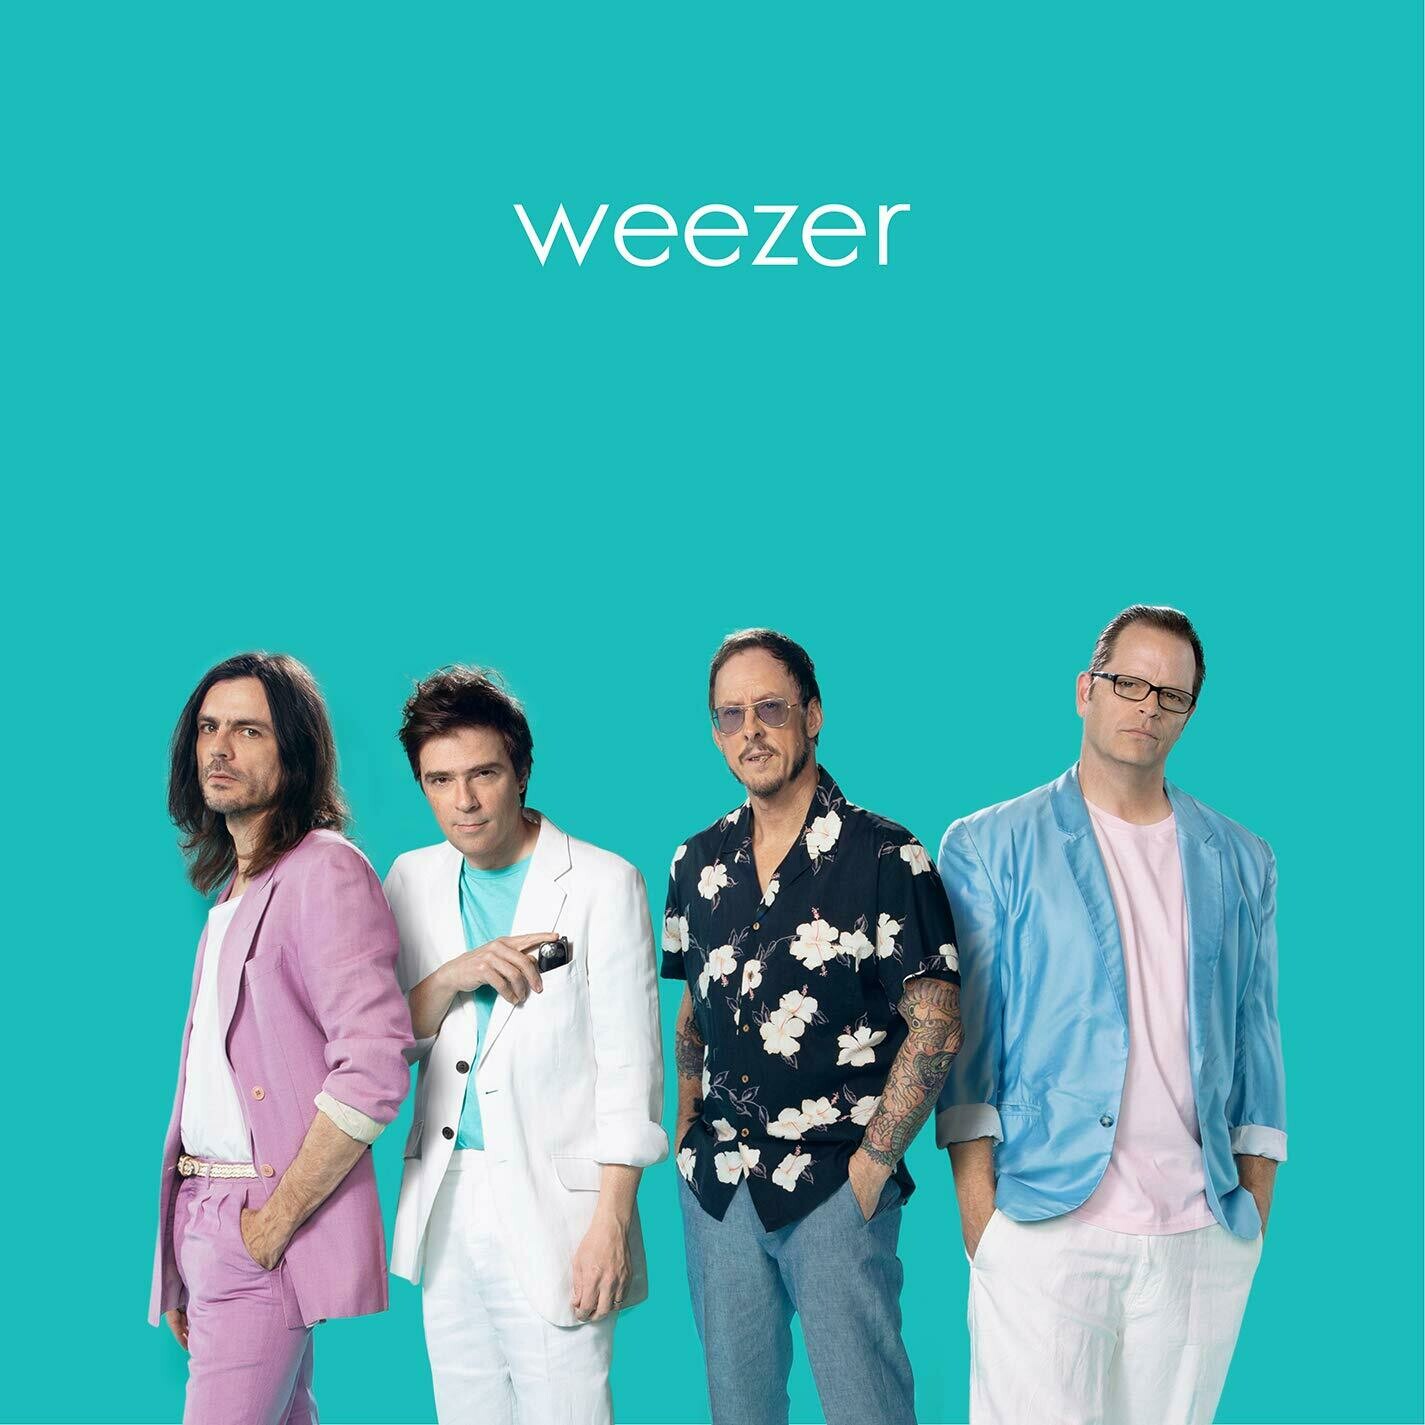 Weezer "Weezer (Teal Album)"